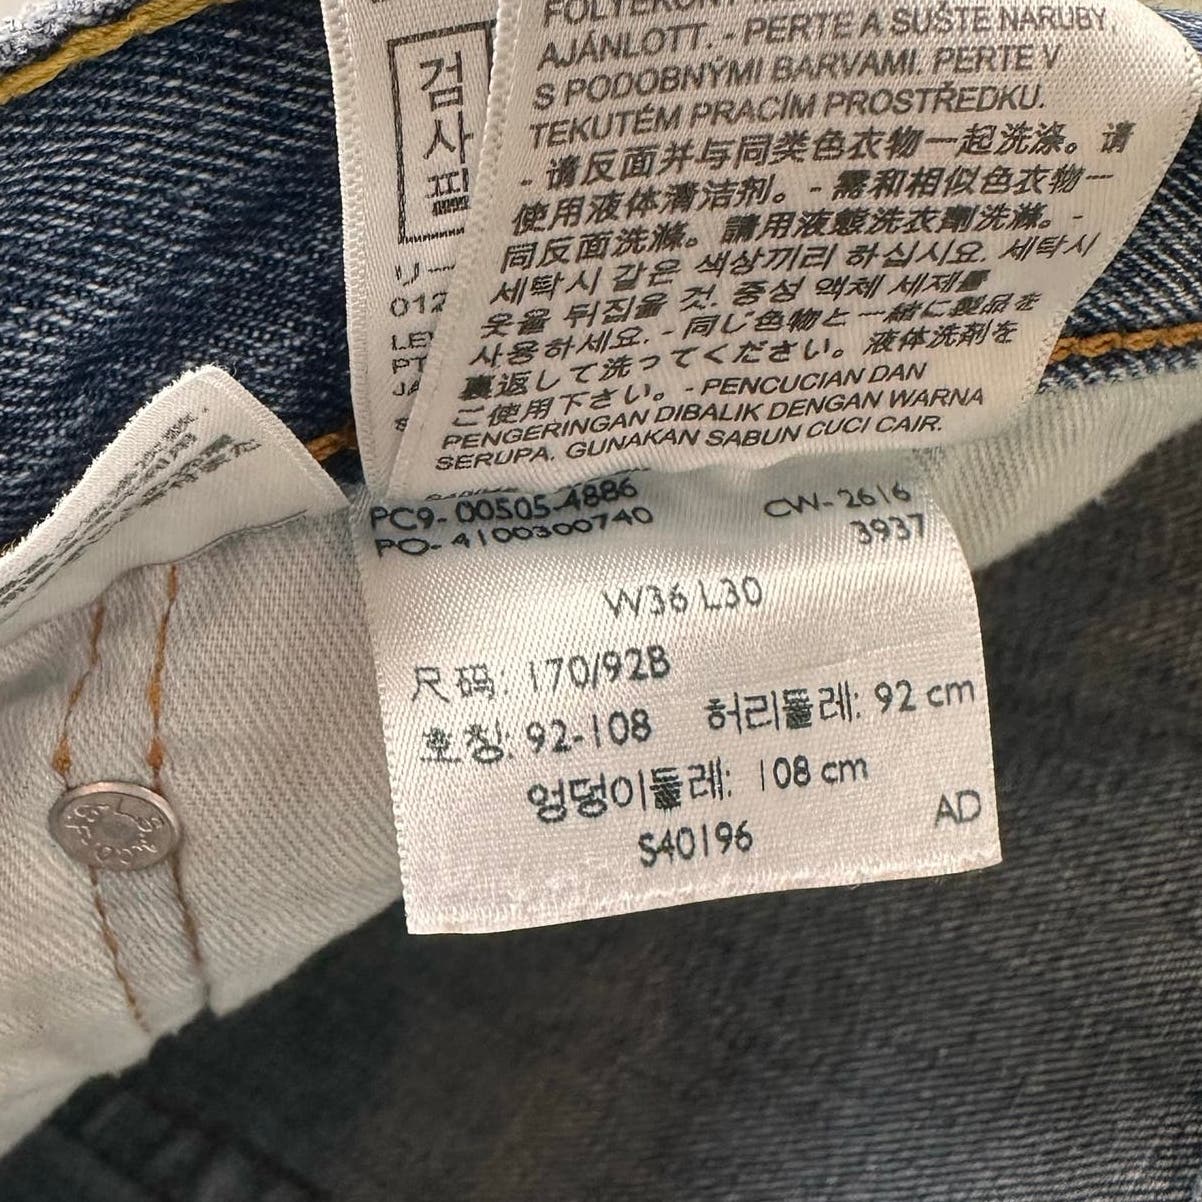 Vintage Levis 505 Denim Jeans 36x30